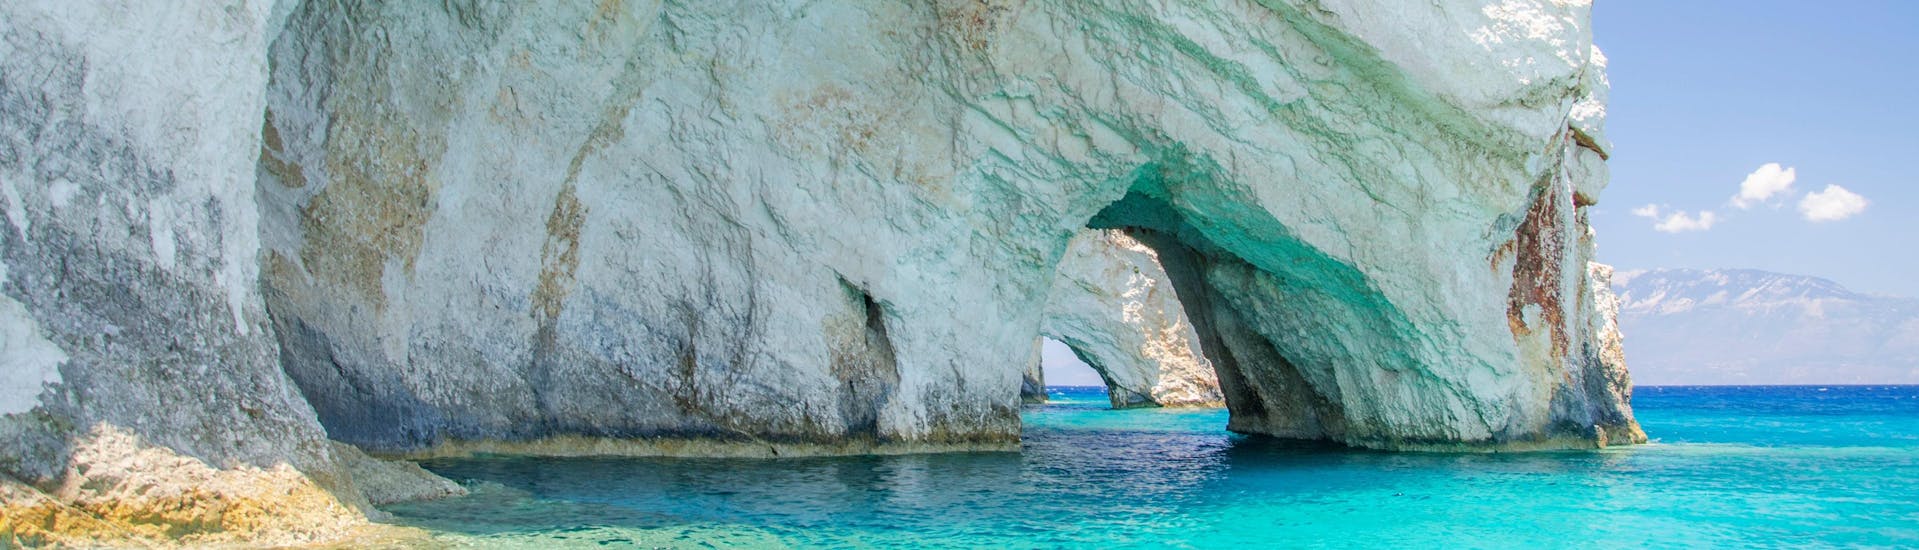 Les étonnantes grottes bleues, une destination populaire pour les balades en bateau à Zakynthos.